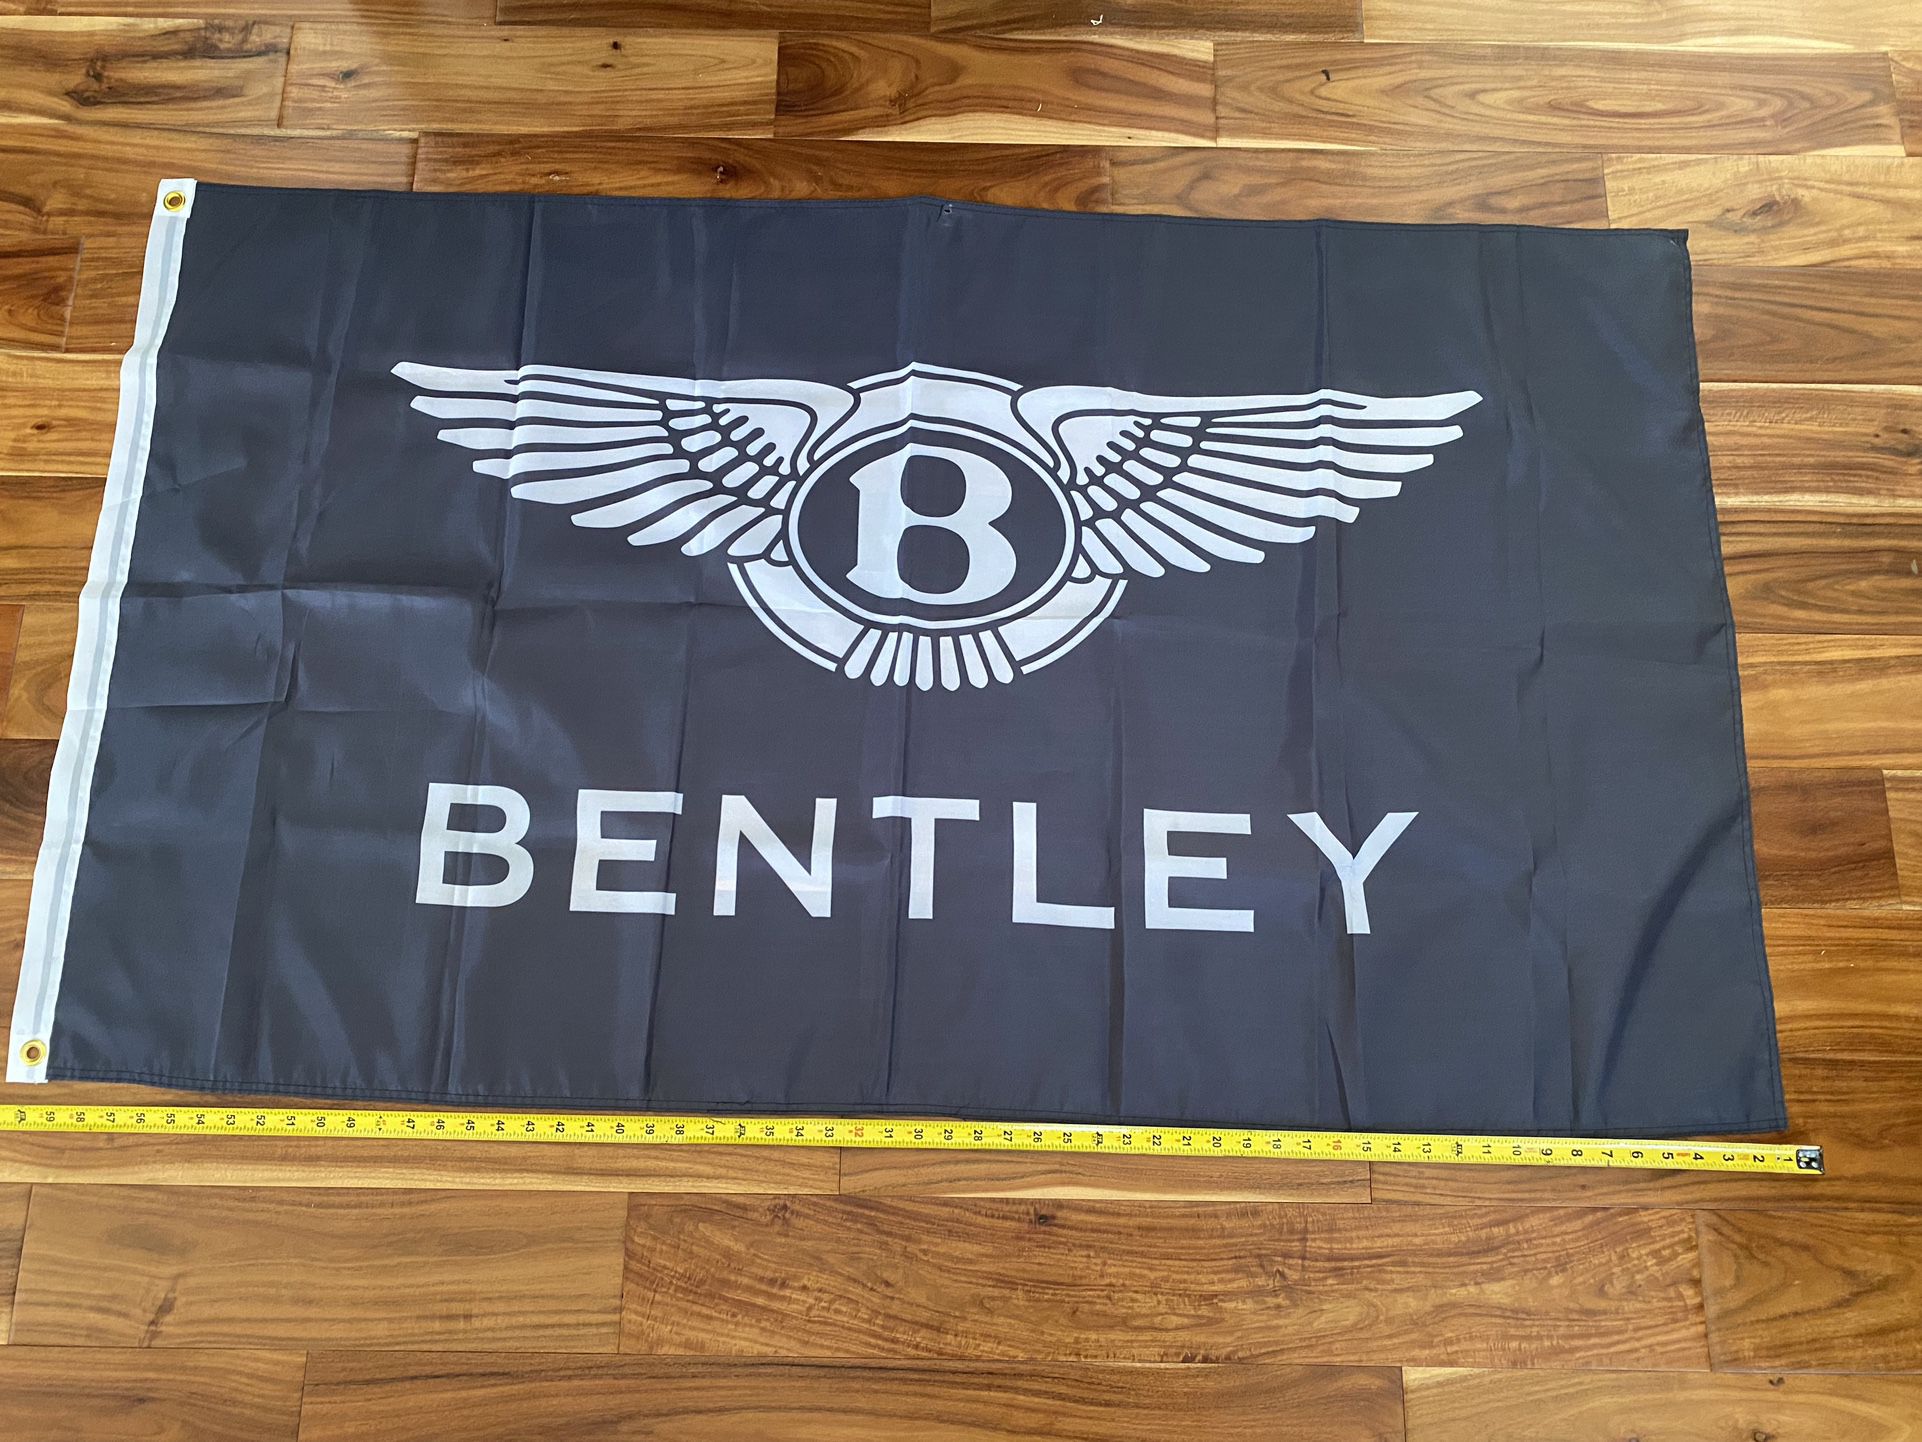 Bentley Flag Banner $20